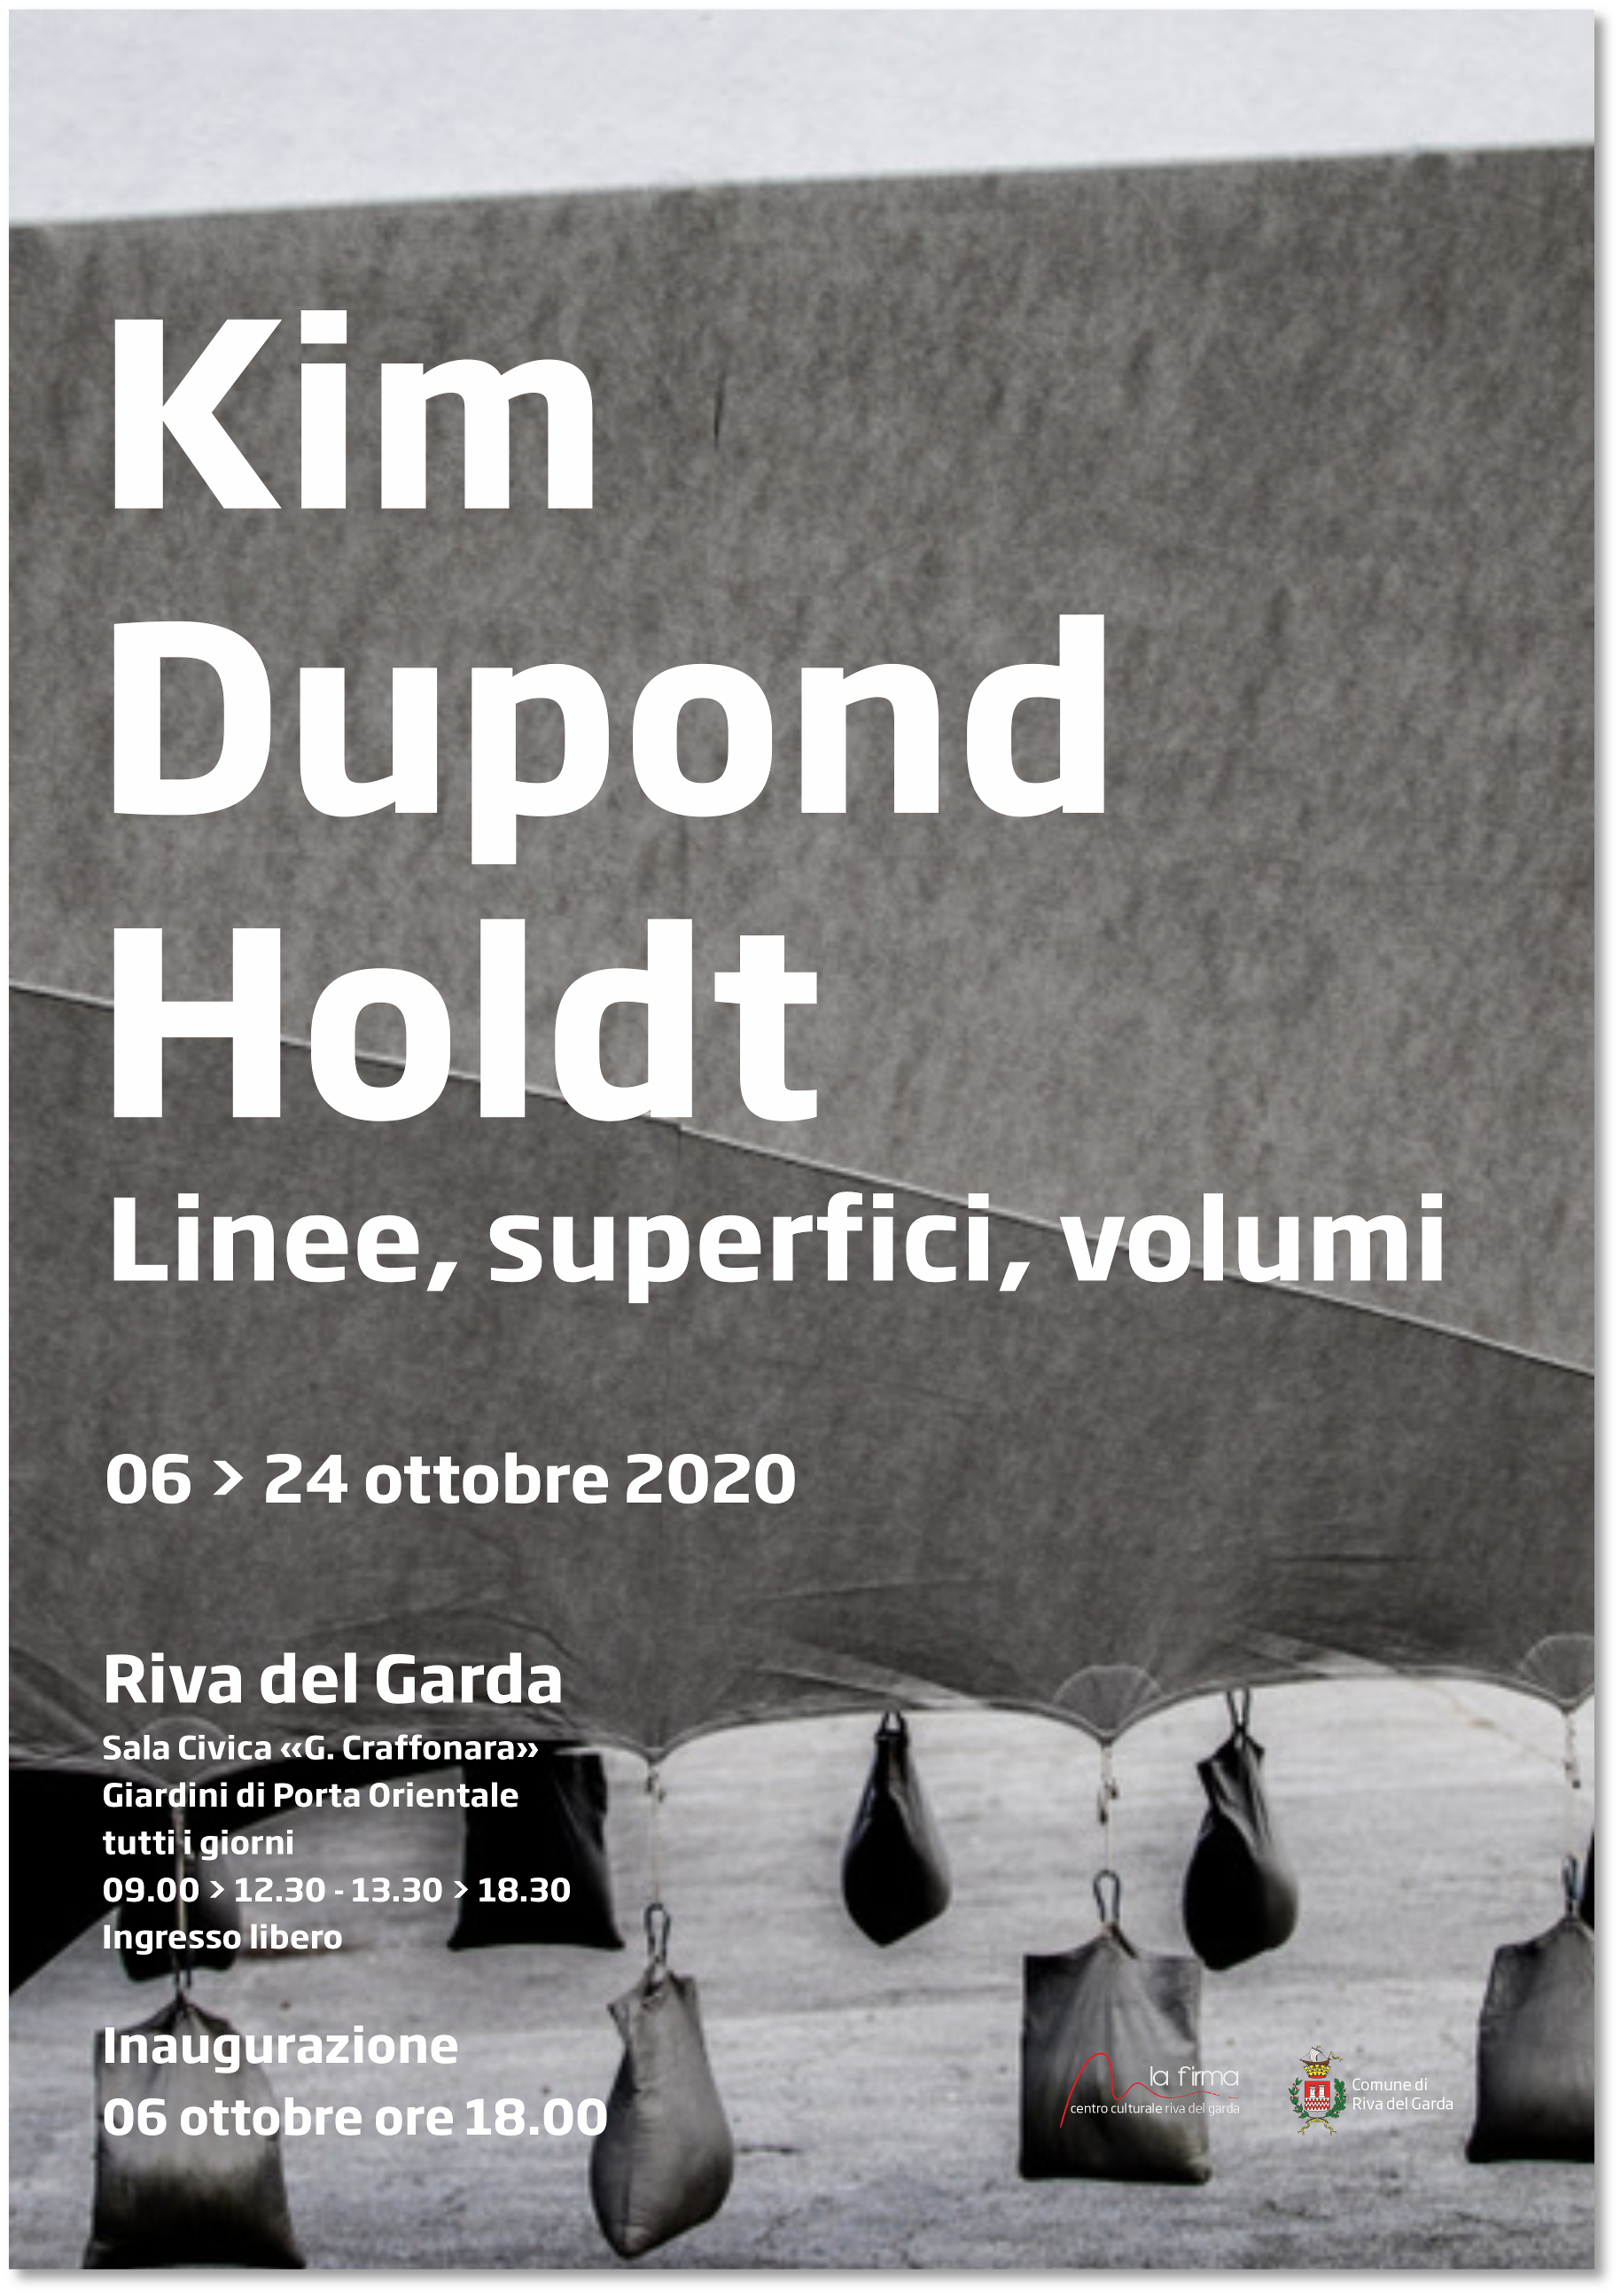 Kim Dupond Holdt - Linee, superfici, volumi